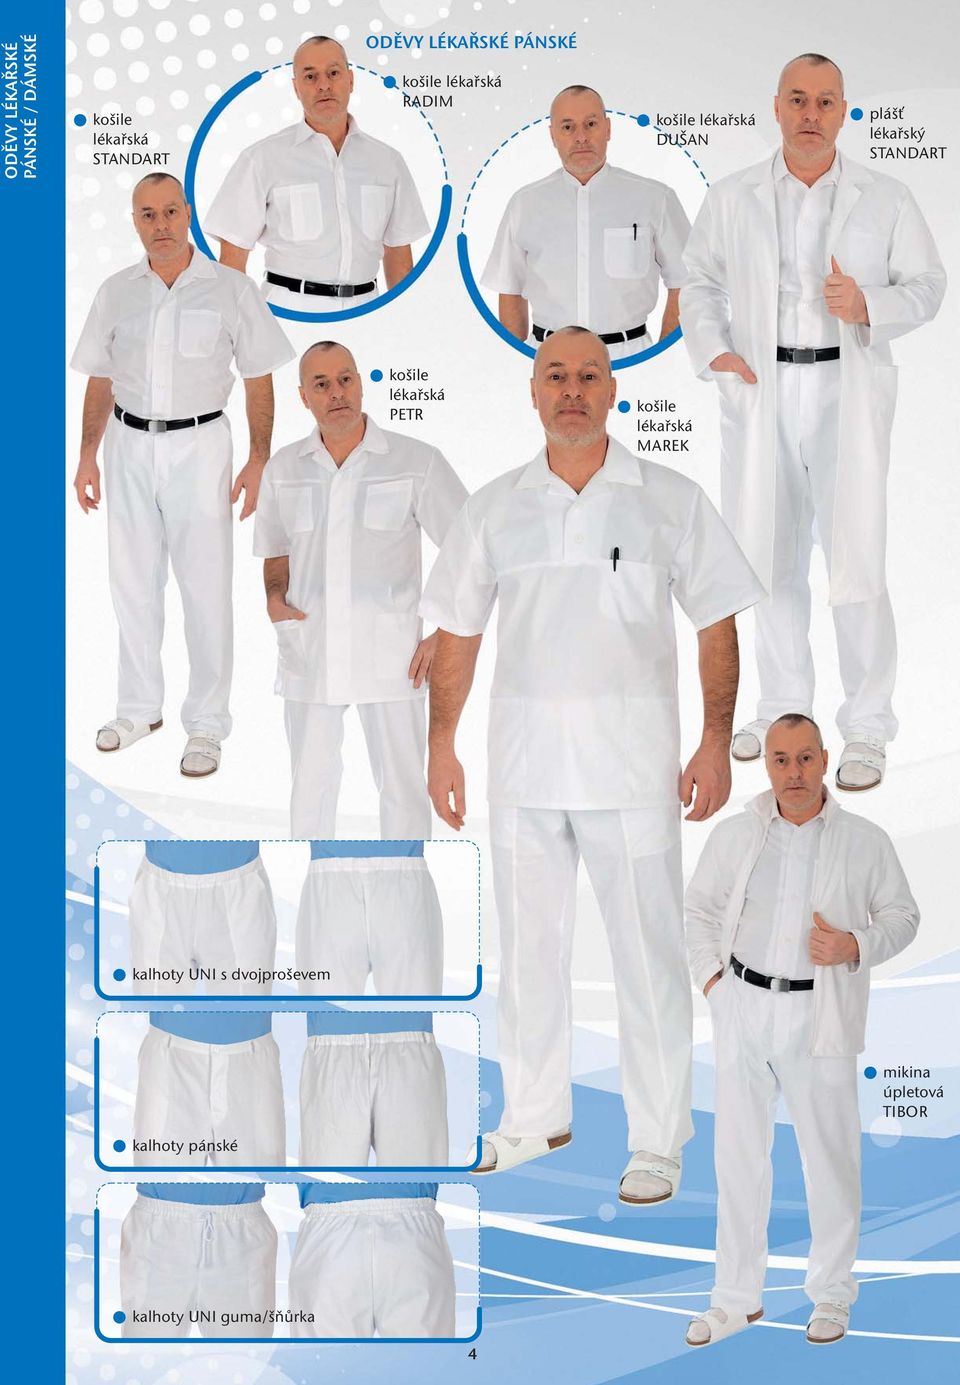 lékařský STANDART košile lékařská PETR košile lékařská MAREK kalhoty